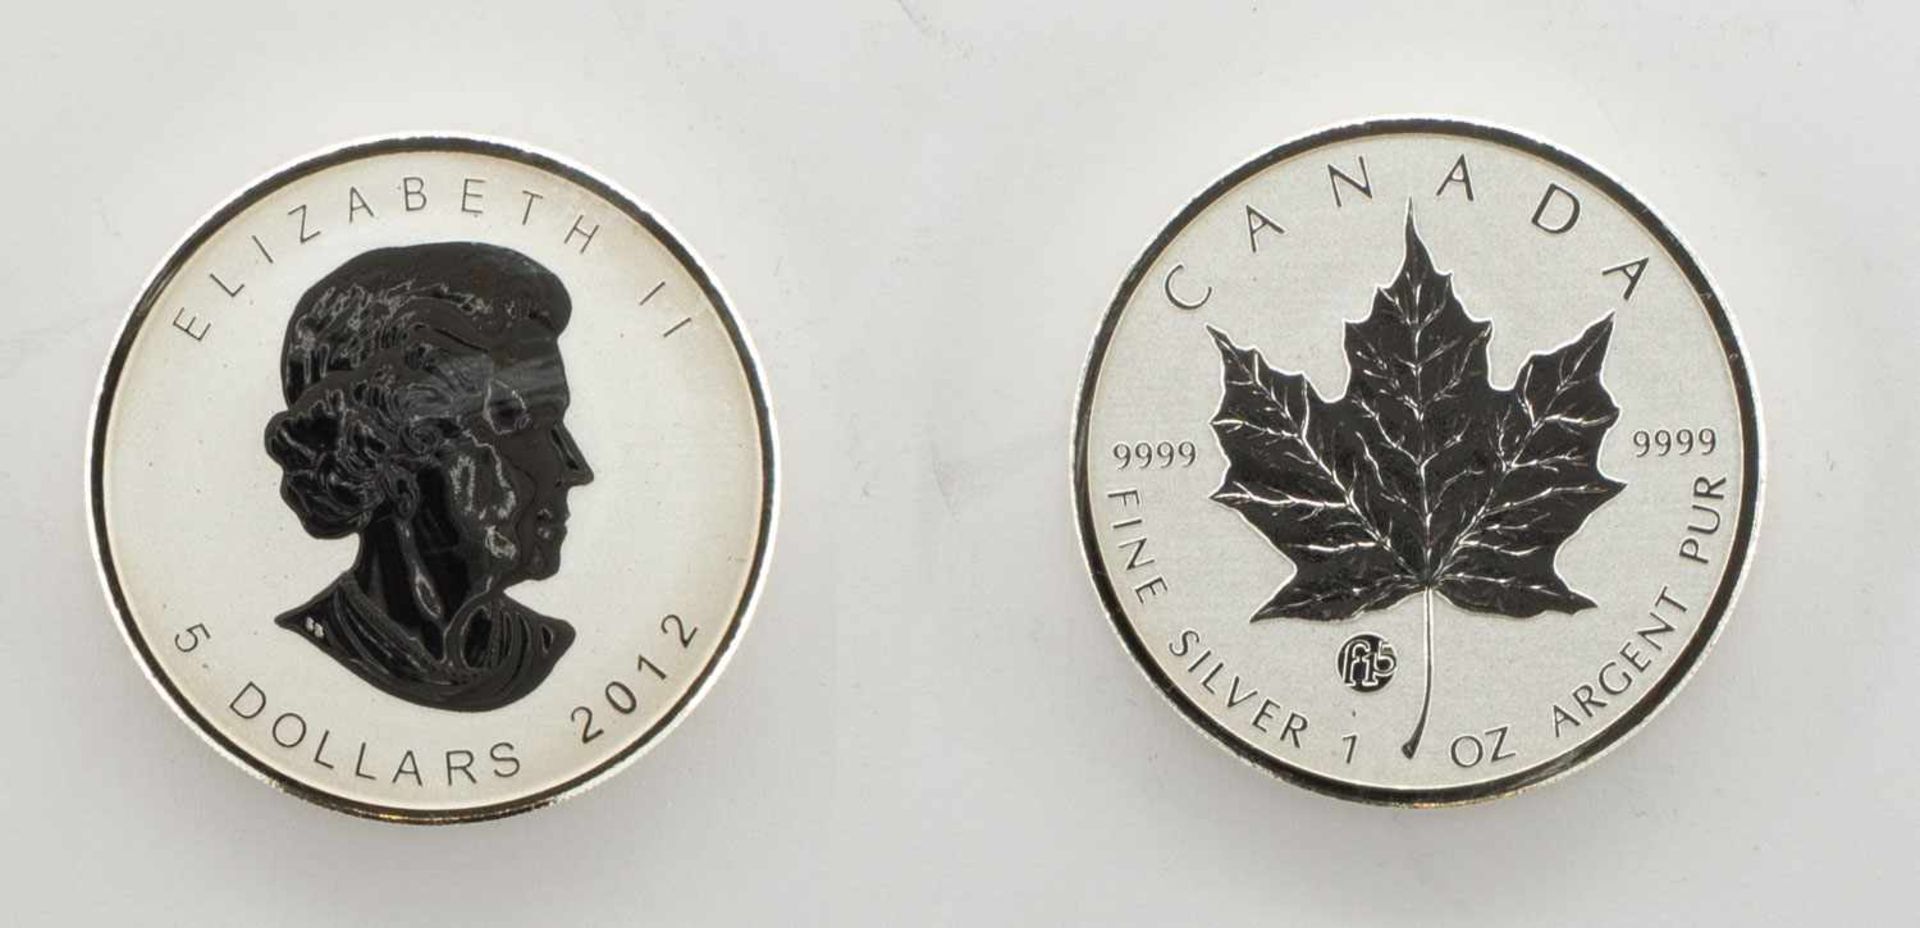 1 DollarCanada 2012, Maple Leaf, Silber, stgl.